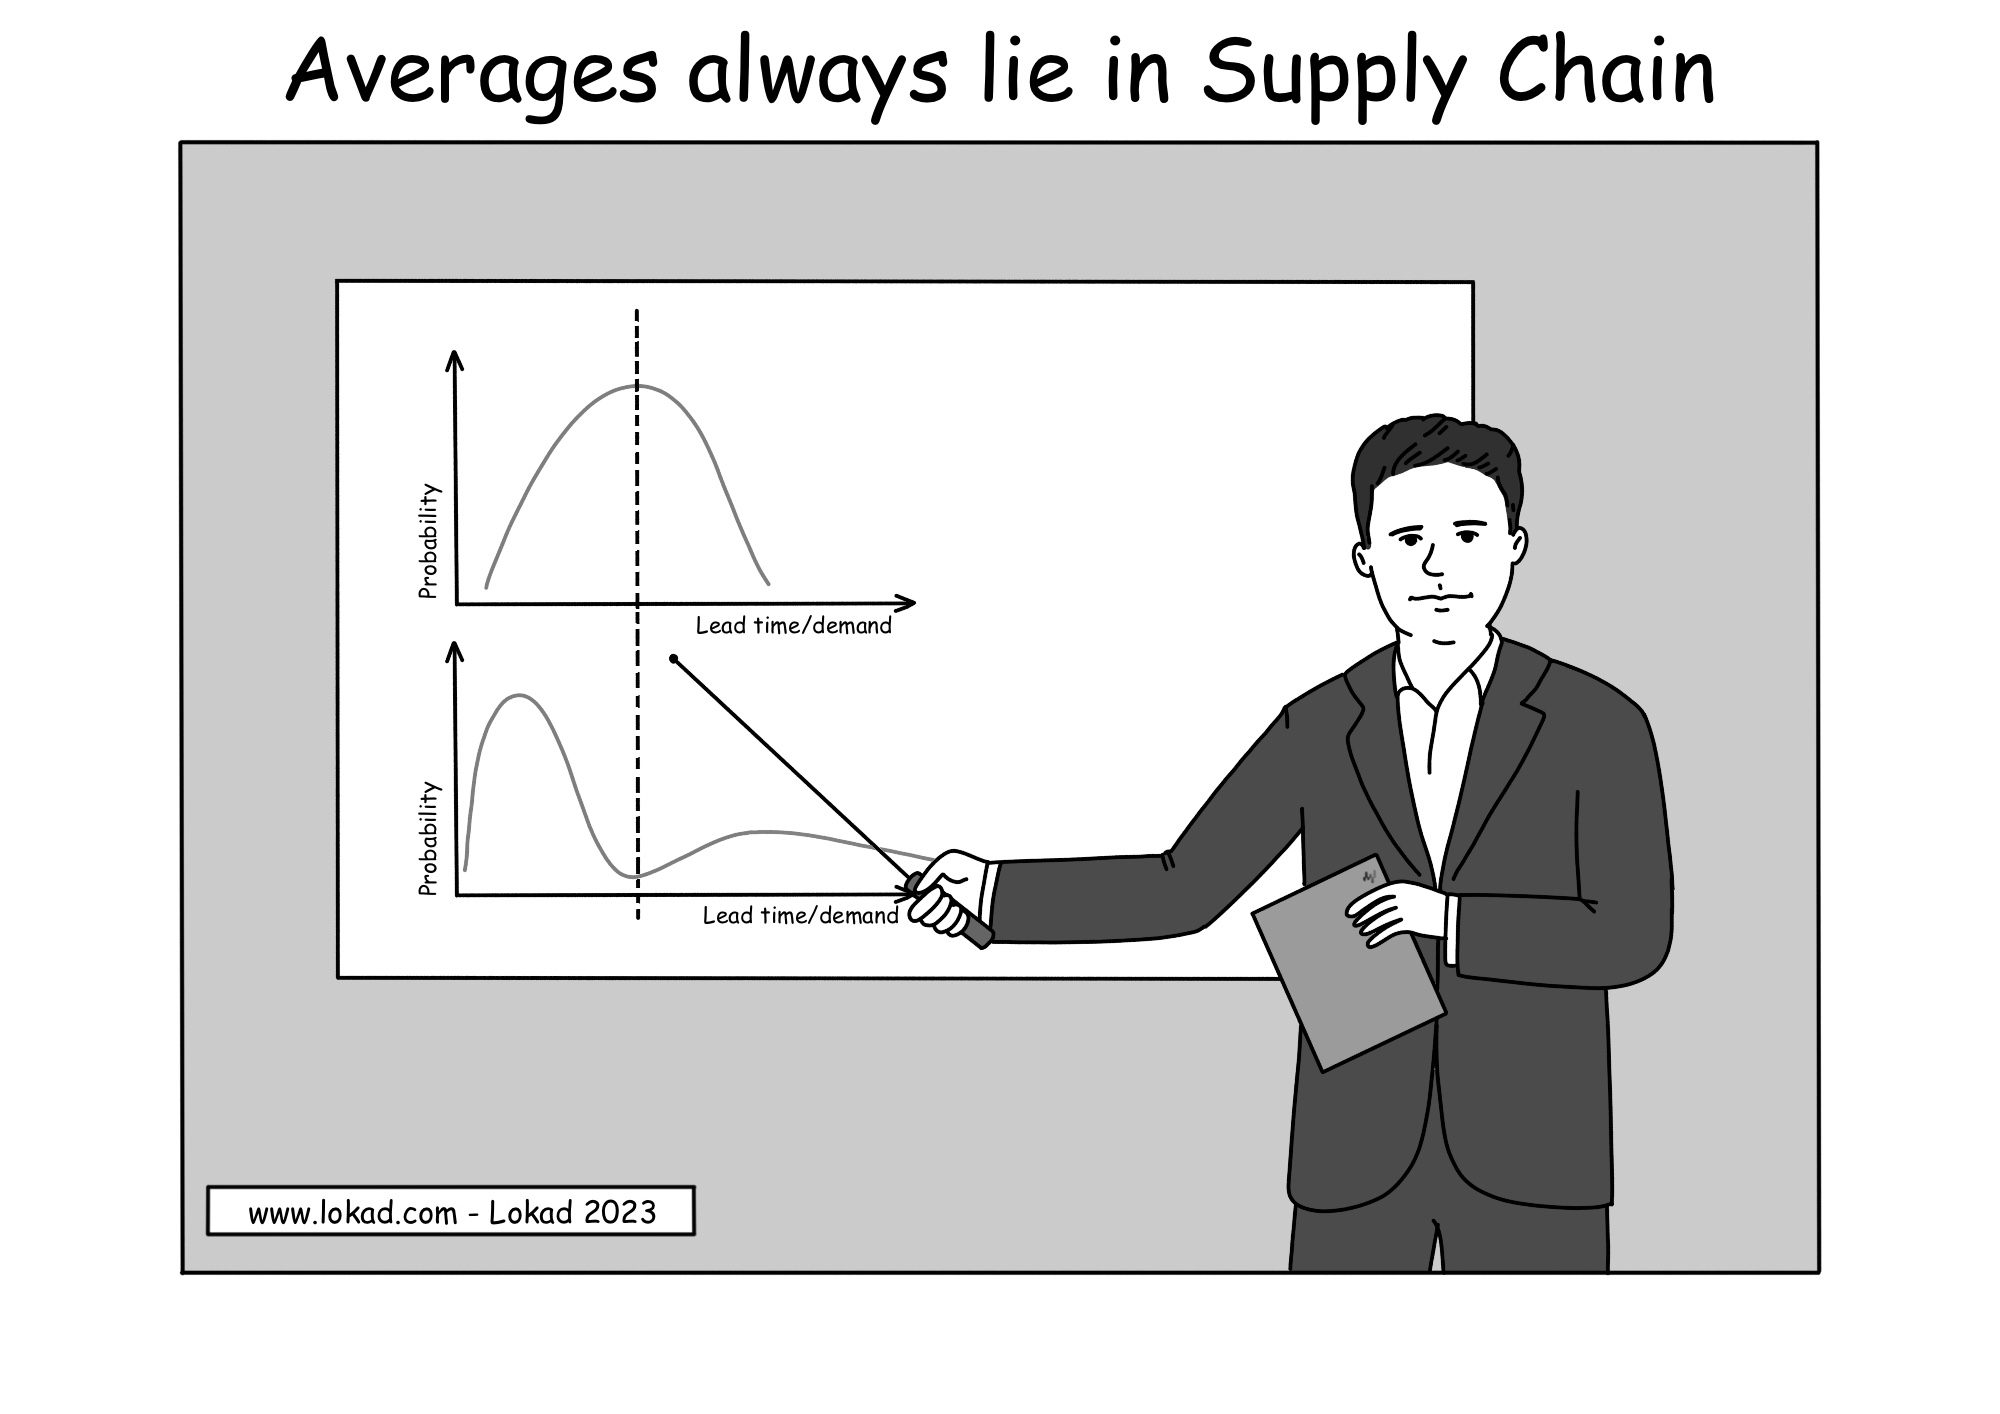 Les moyennes mentent toujours dans la Supply Chain